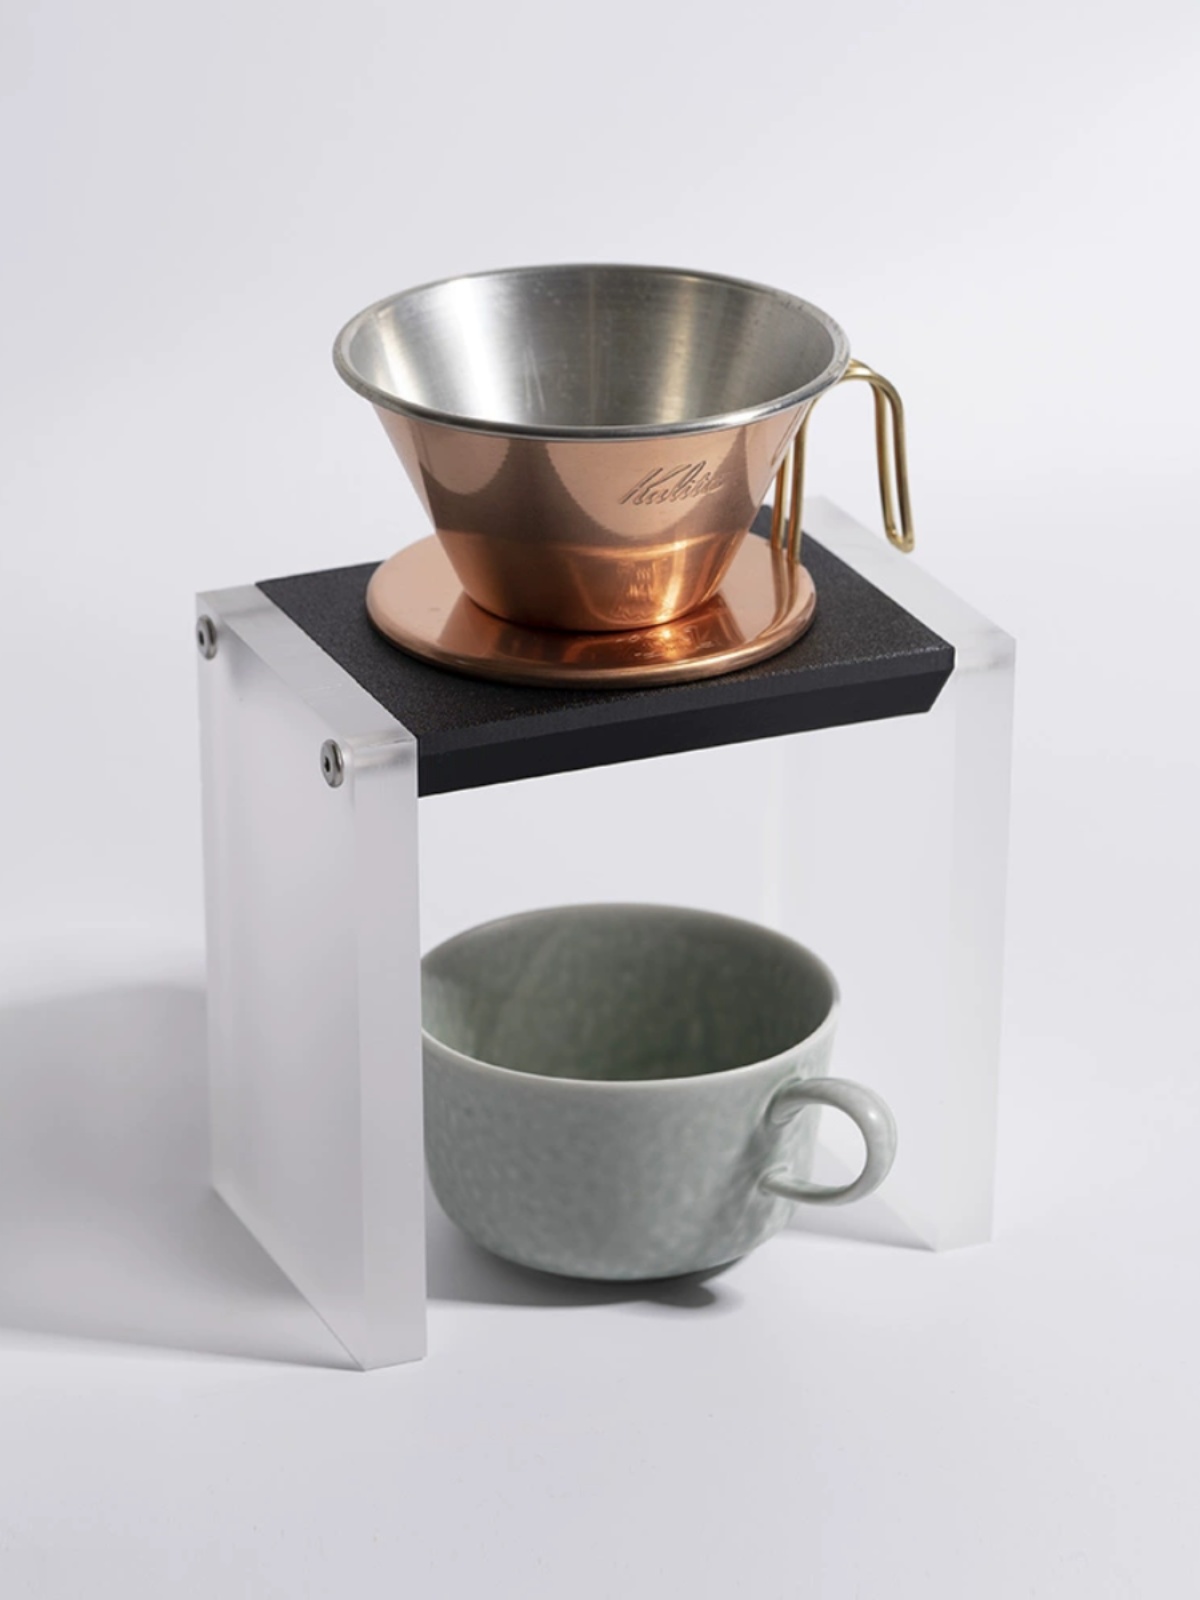 手沖支架3d打印加壓克力 生活儀式感 咖啡器材